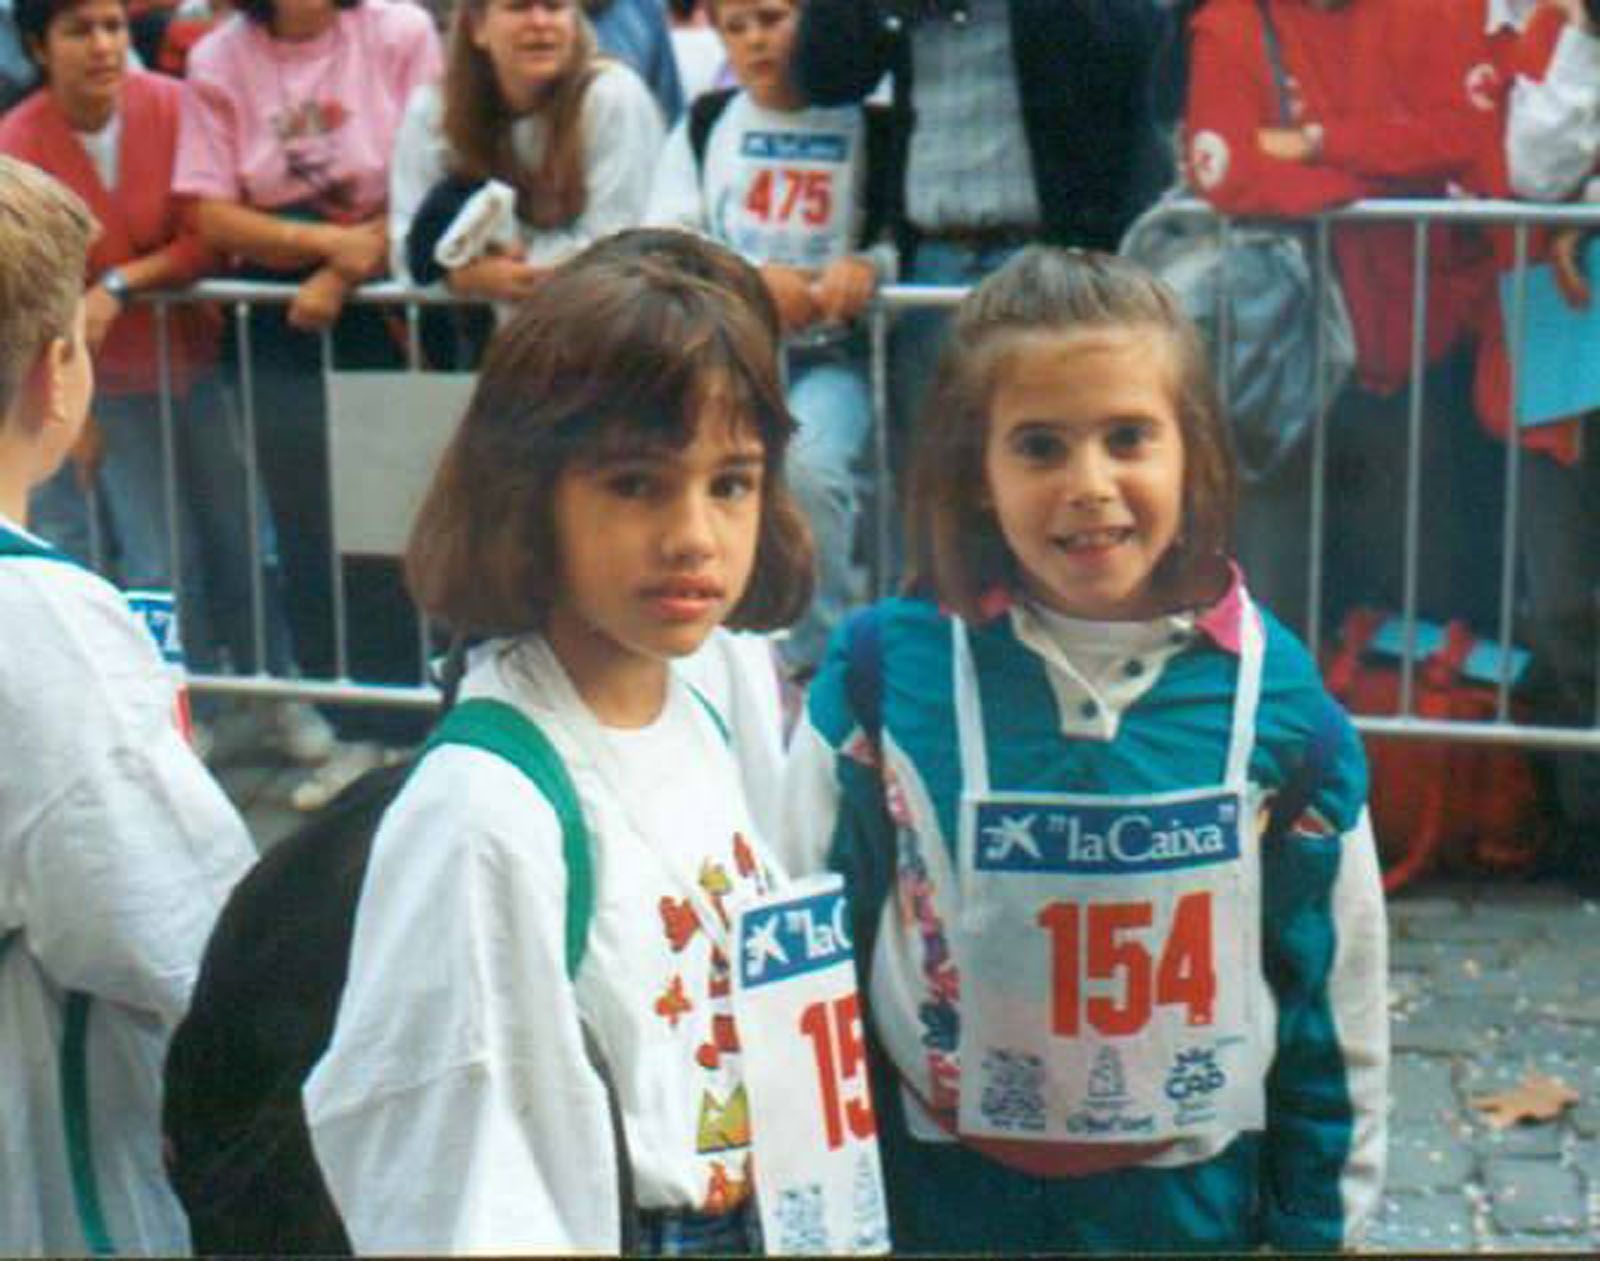 Tere Arechavala i Marta Castro, participants de la Marxa l'any 1995 Foto Cedida